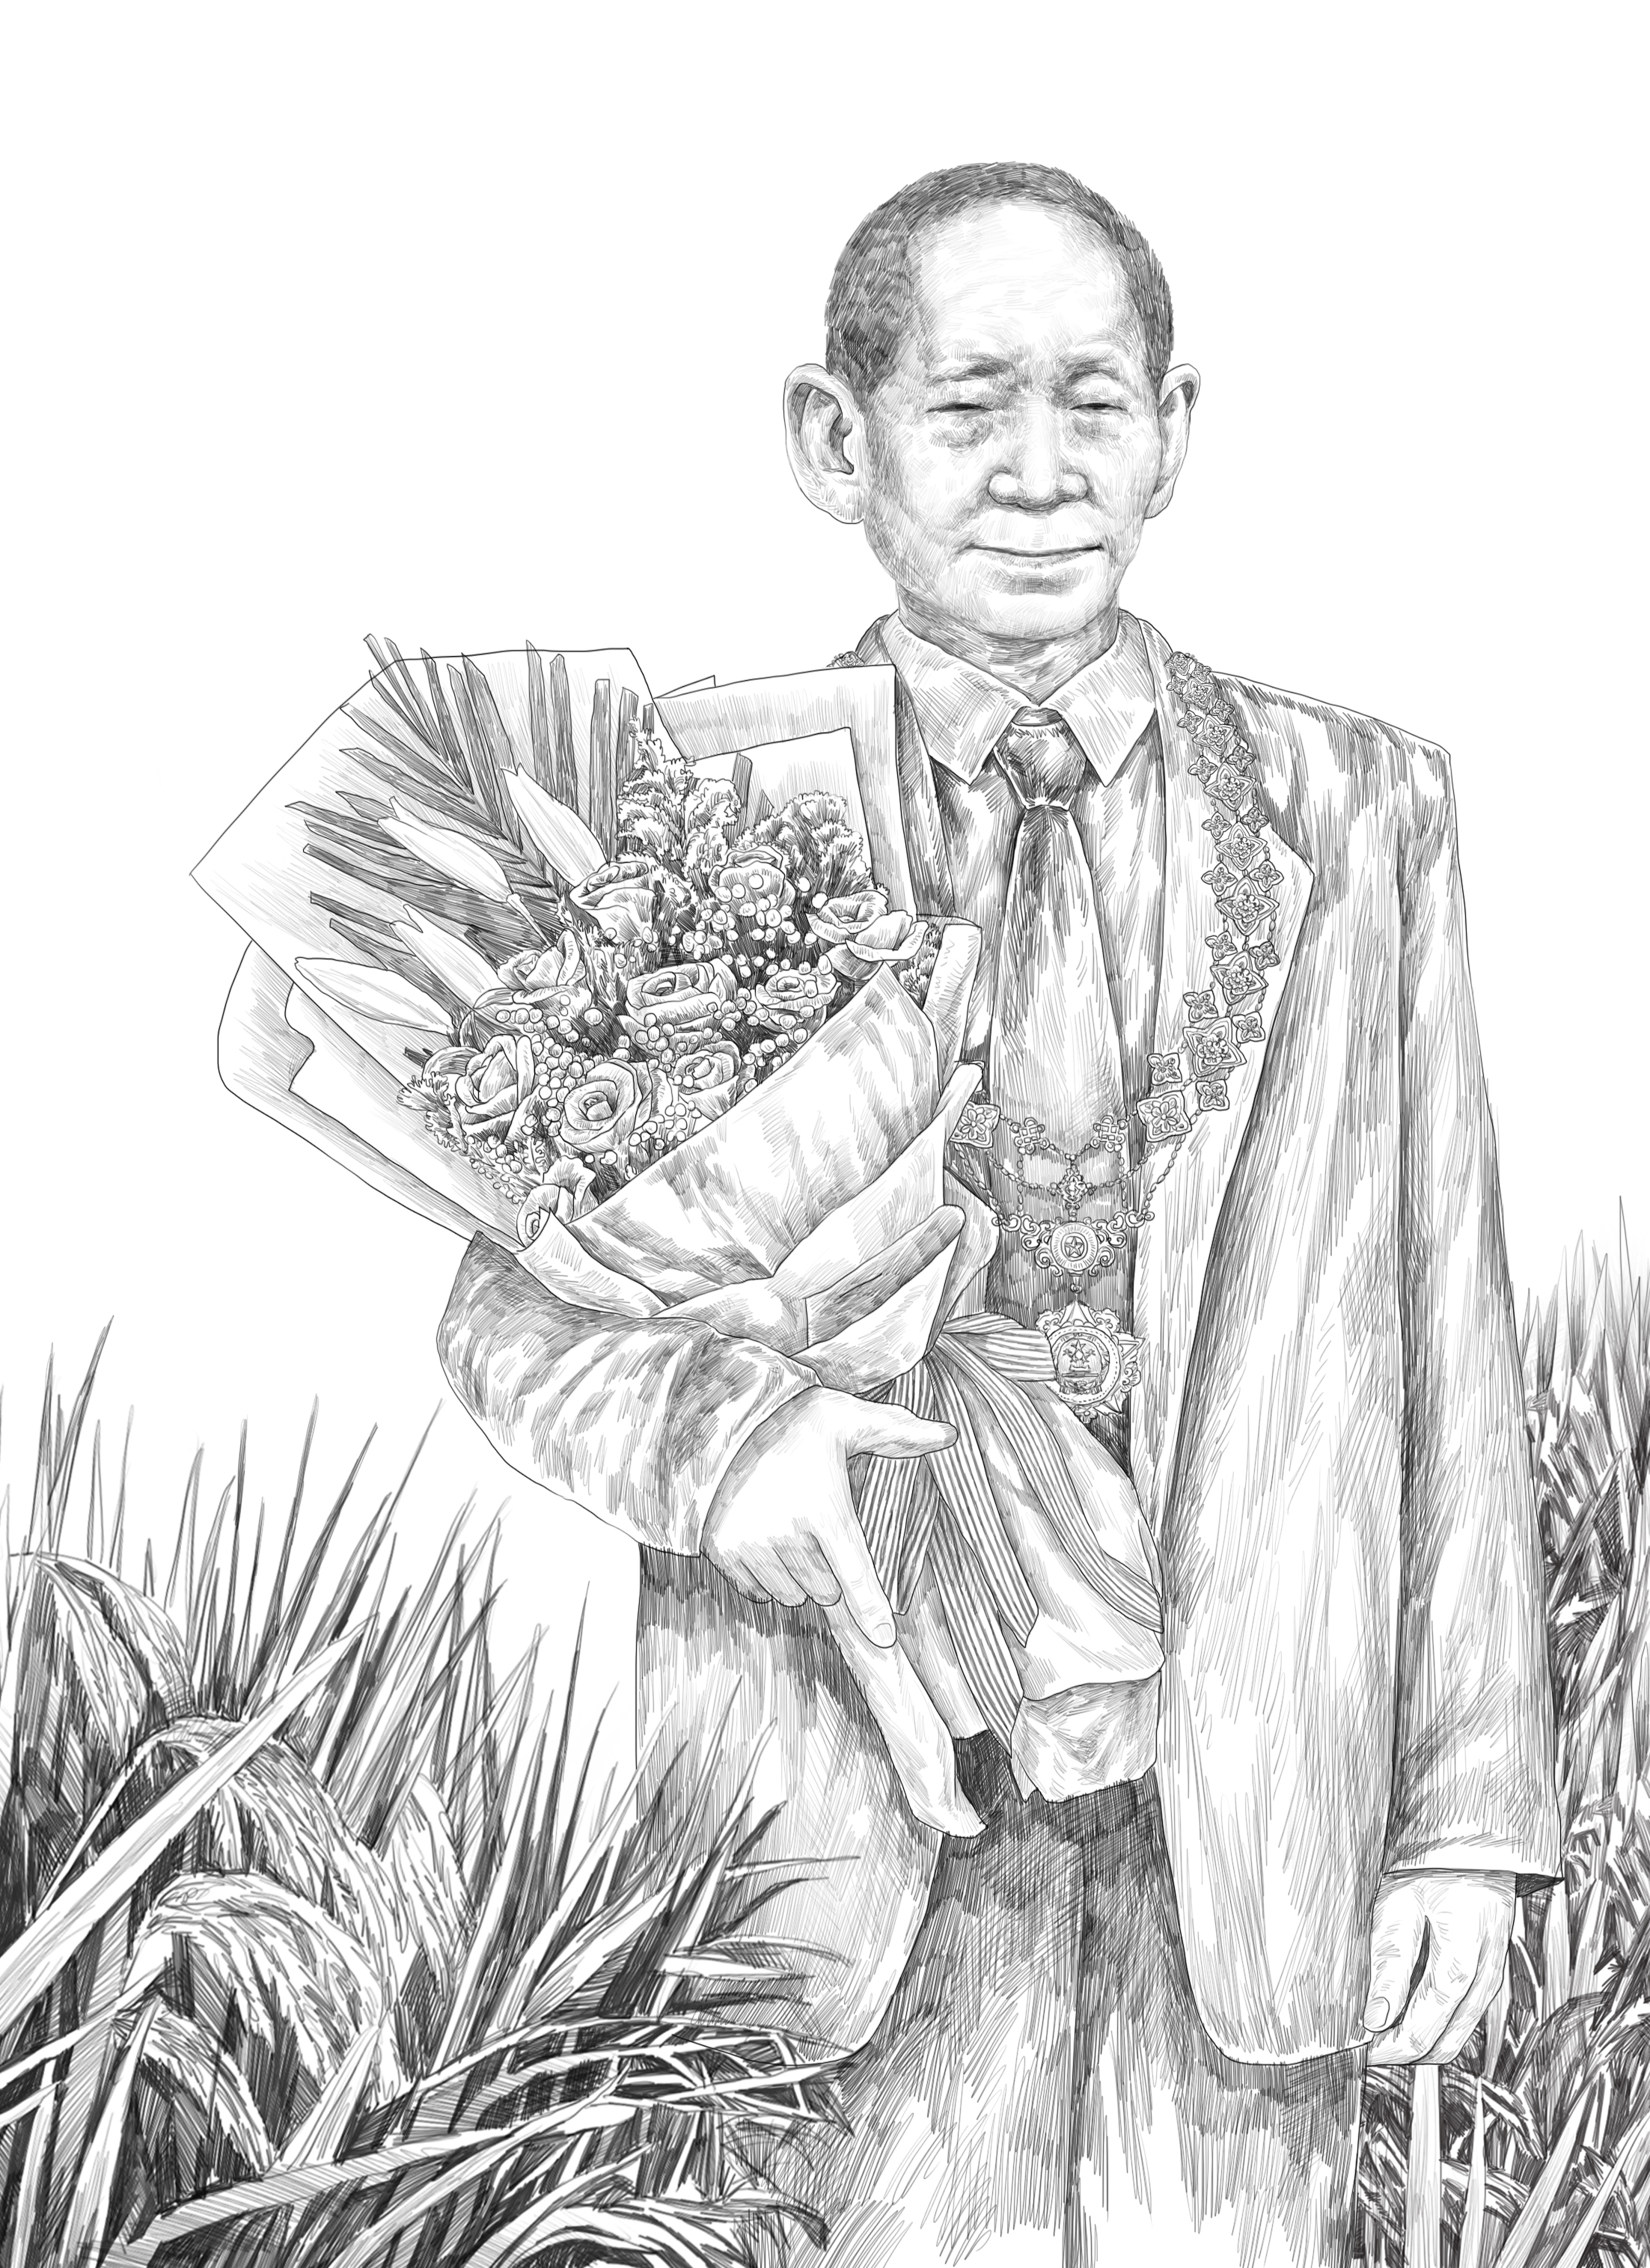 水稻之父的简笔画绘画图片